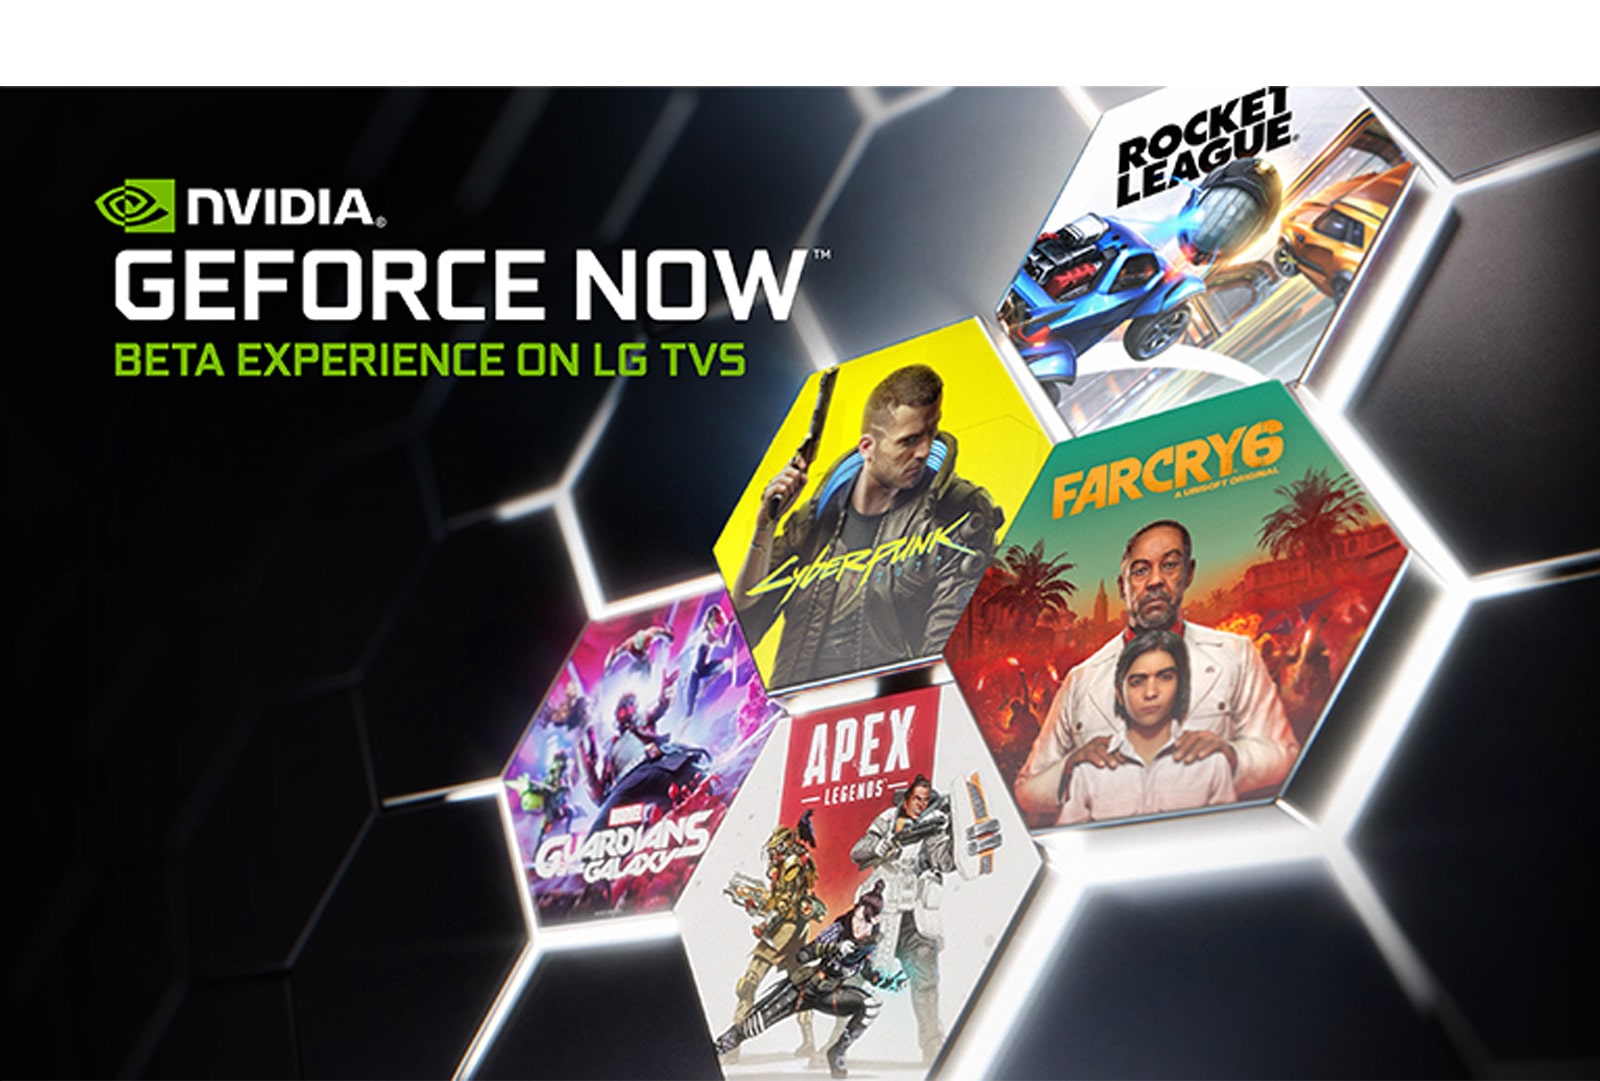  Imagen del logotipo de GEFORCE Now sobre un fondo oscuro. Se muestran las portadas y los títulos de varios videojuegos.